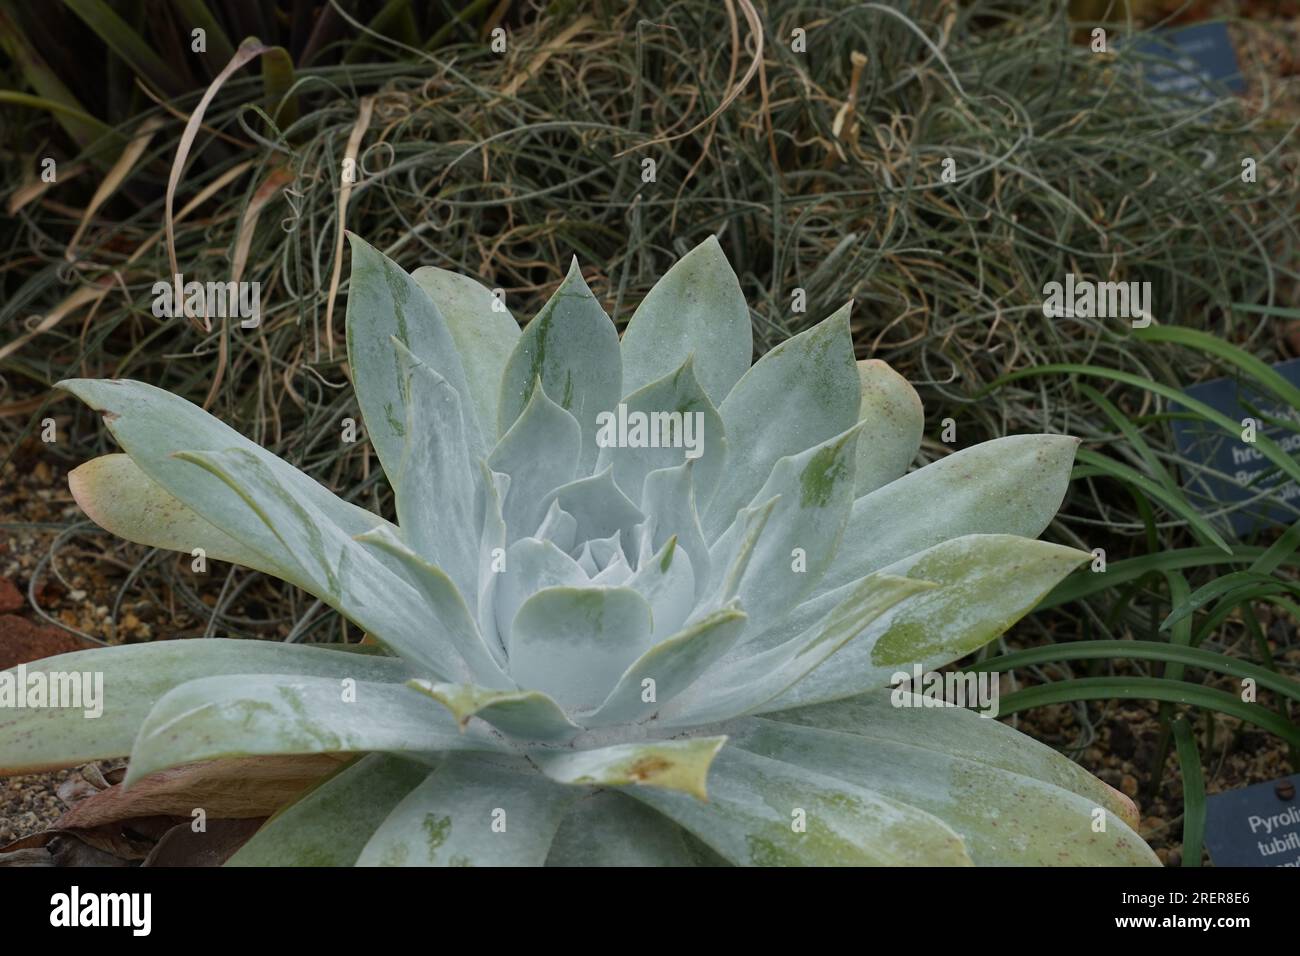 Die Sukkulenten Pflanzen, die als San Quintín LiveForever bekannt sind und auf lateinisch Dudleya anthonyi genannt werden, sind in einer einzigen Region Kaliforniens endemisch. Stockfoto